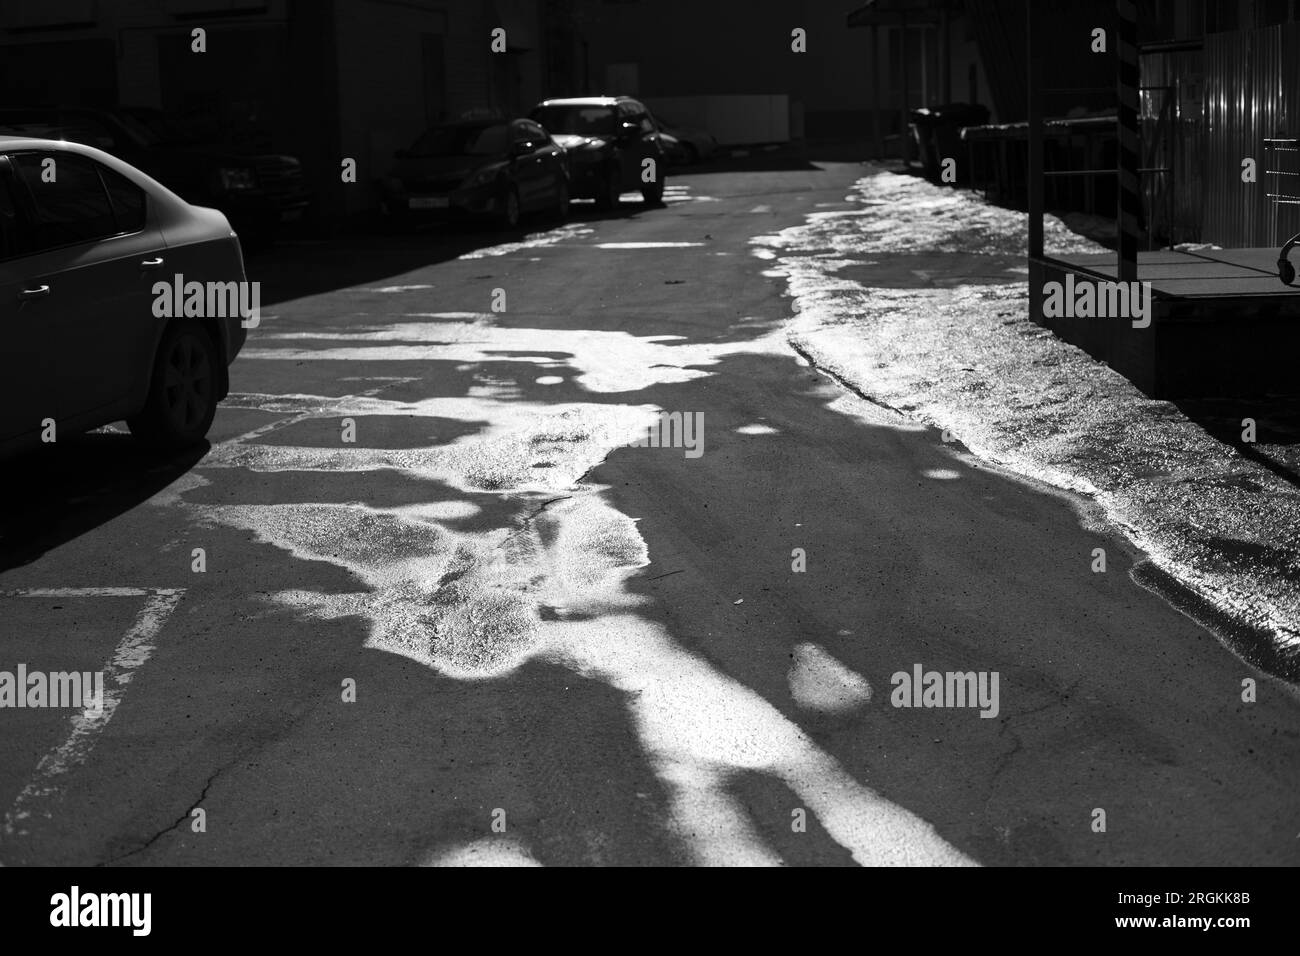 Lois sulla strada. Acqua su asfalto. Strada in città. Foto in bianco e nero della città. Foto Stock